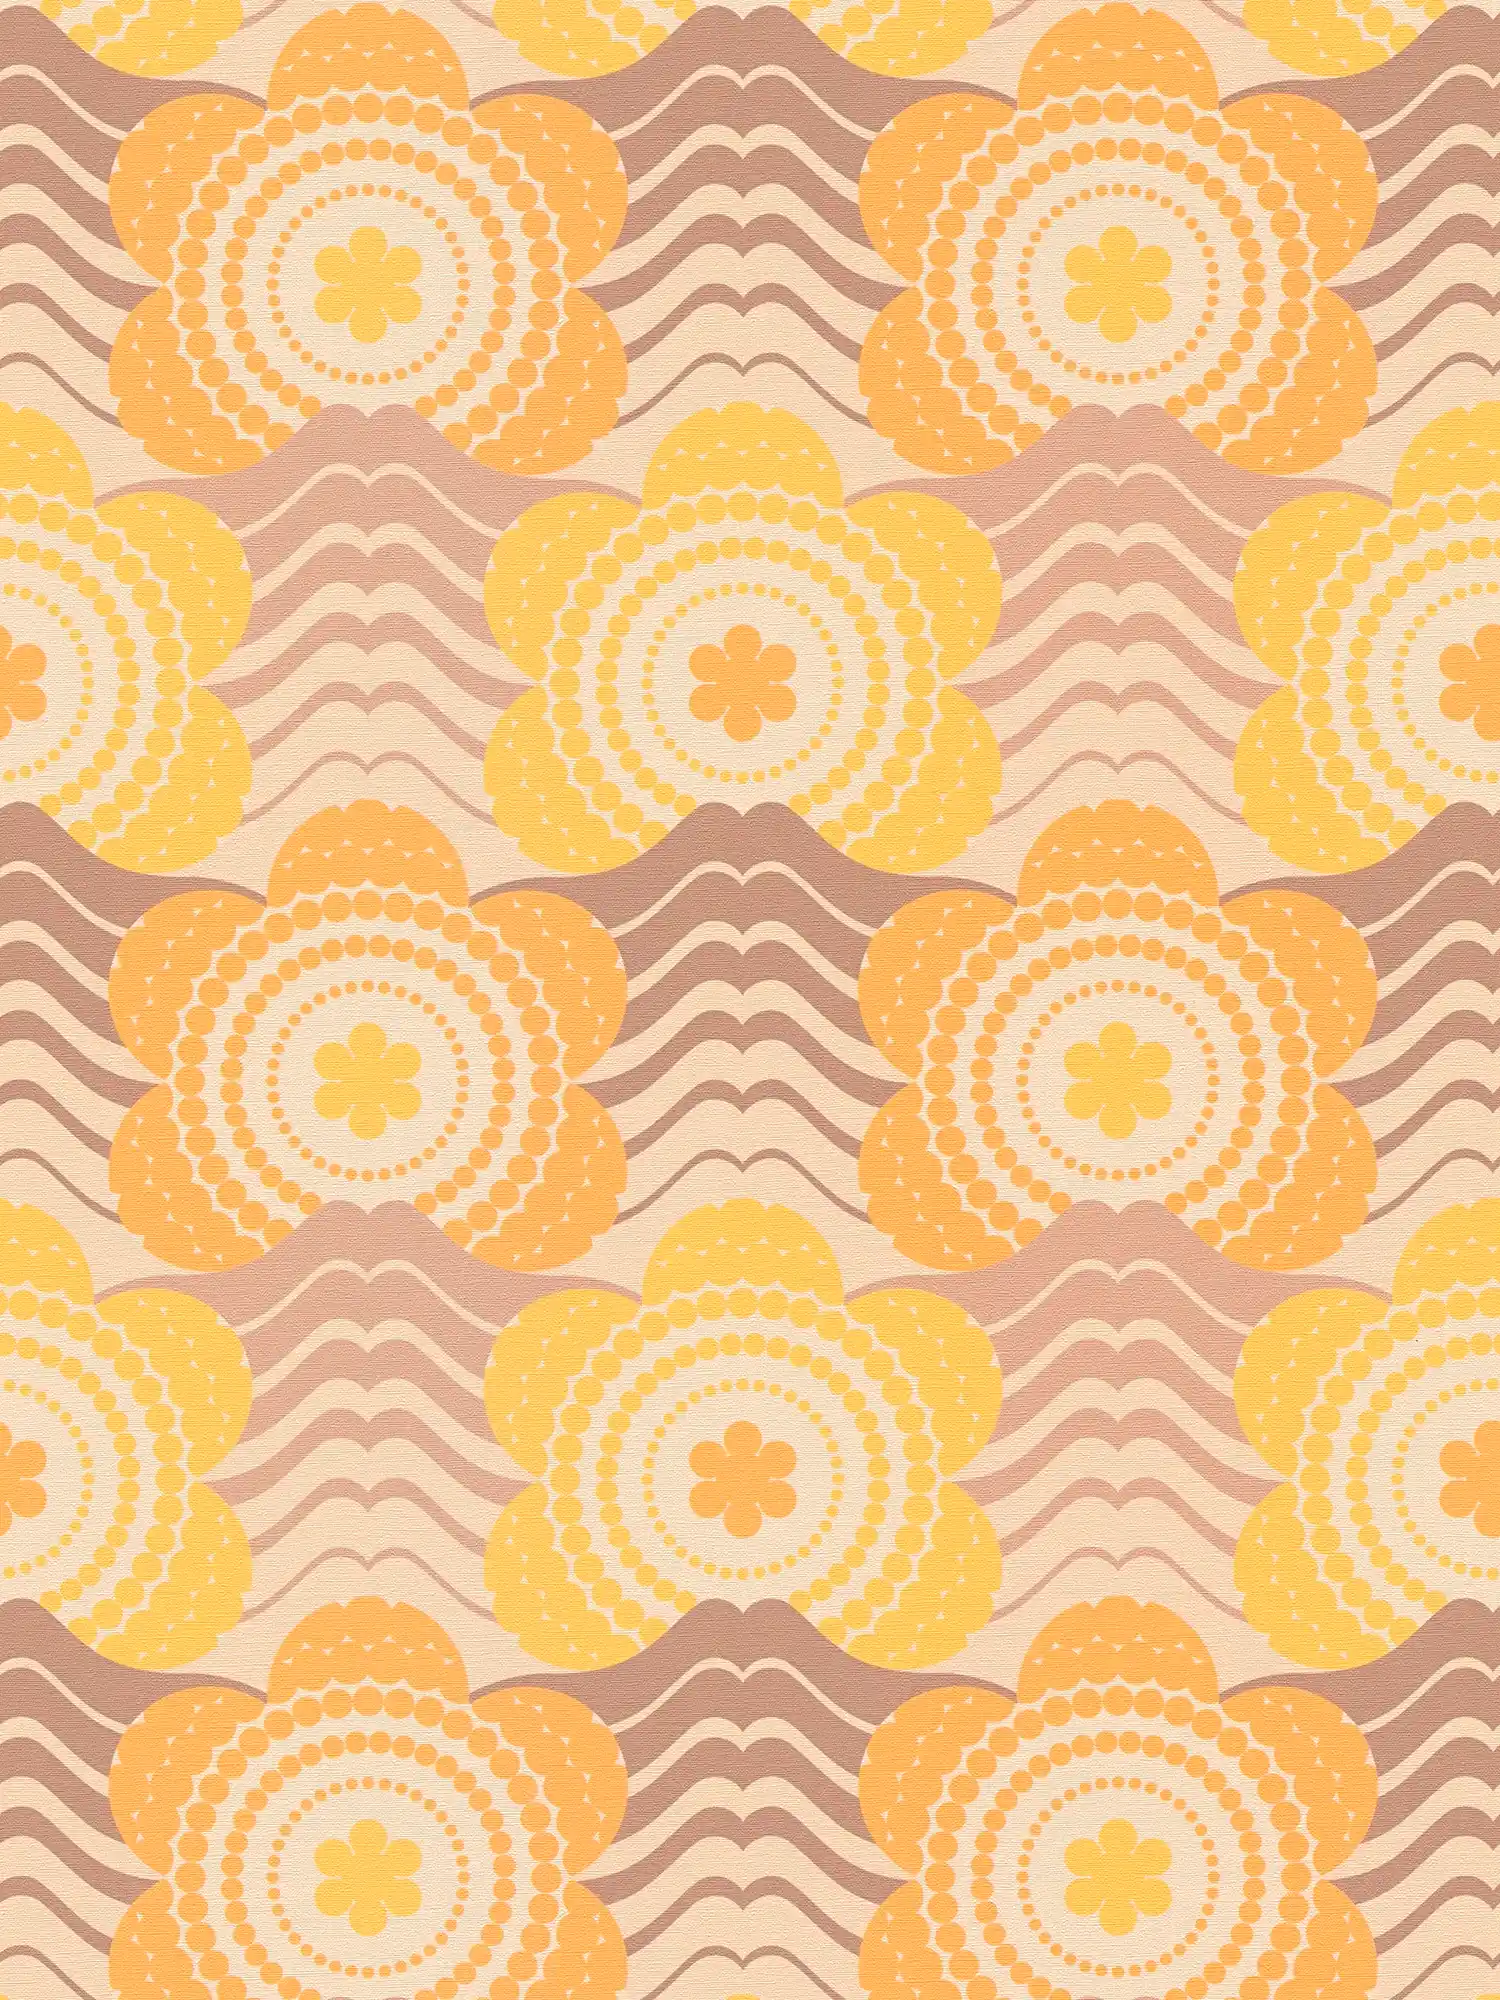 Carta da parati non tessuta con motivo floreale in stile anni '70 - beige, marrone, arancione
